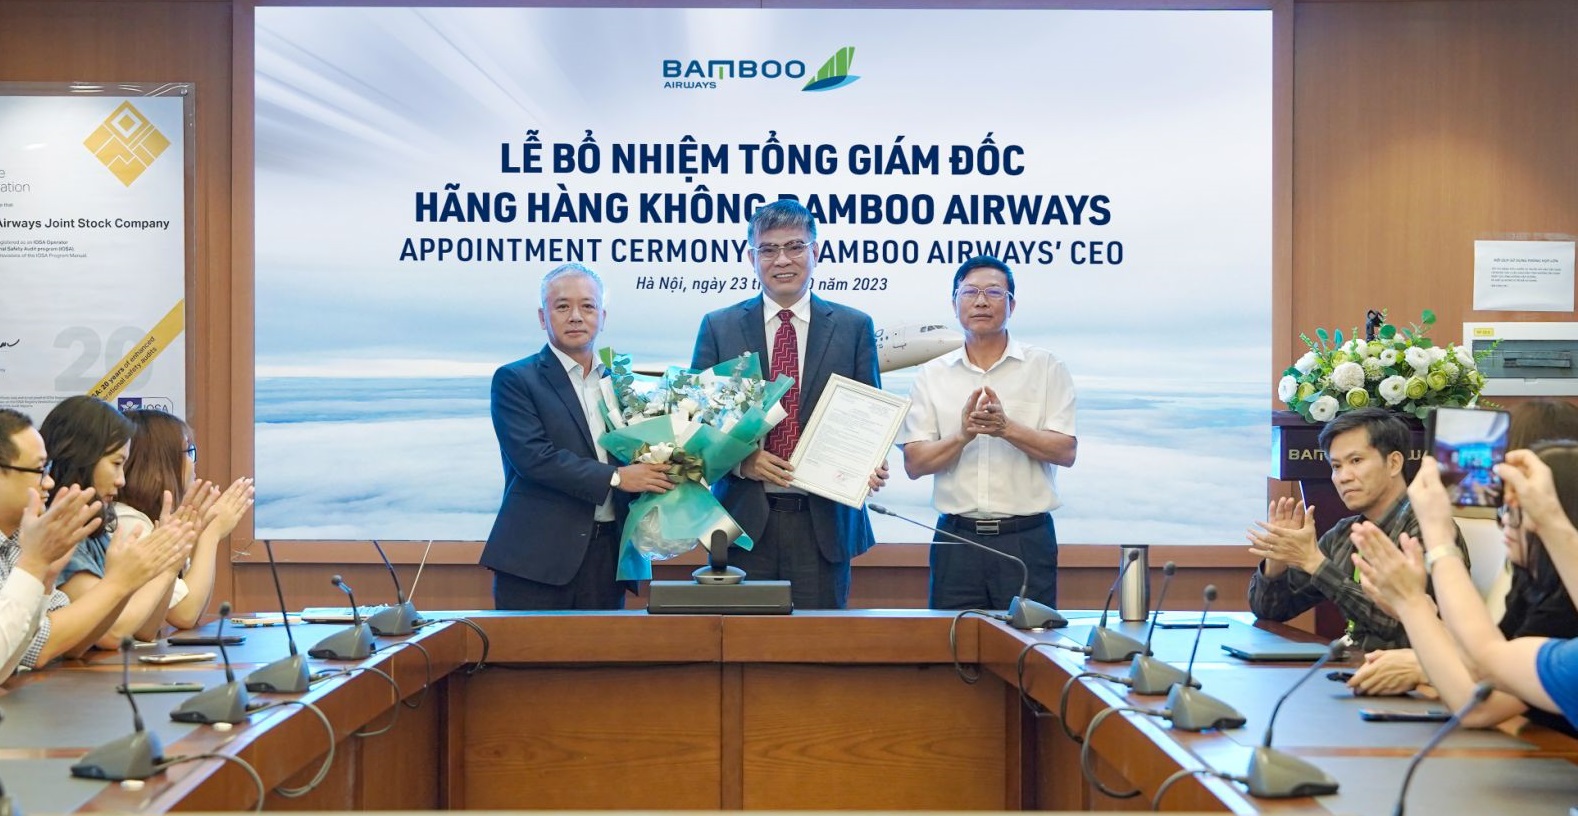 Biến động nhận sự cấp cao, Bamboo Airways có Tổng giám đốc mới - Ảnh 1.